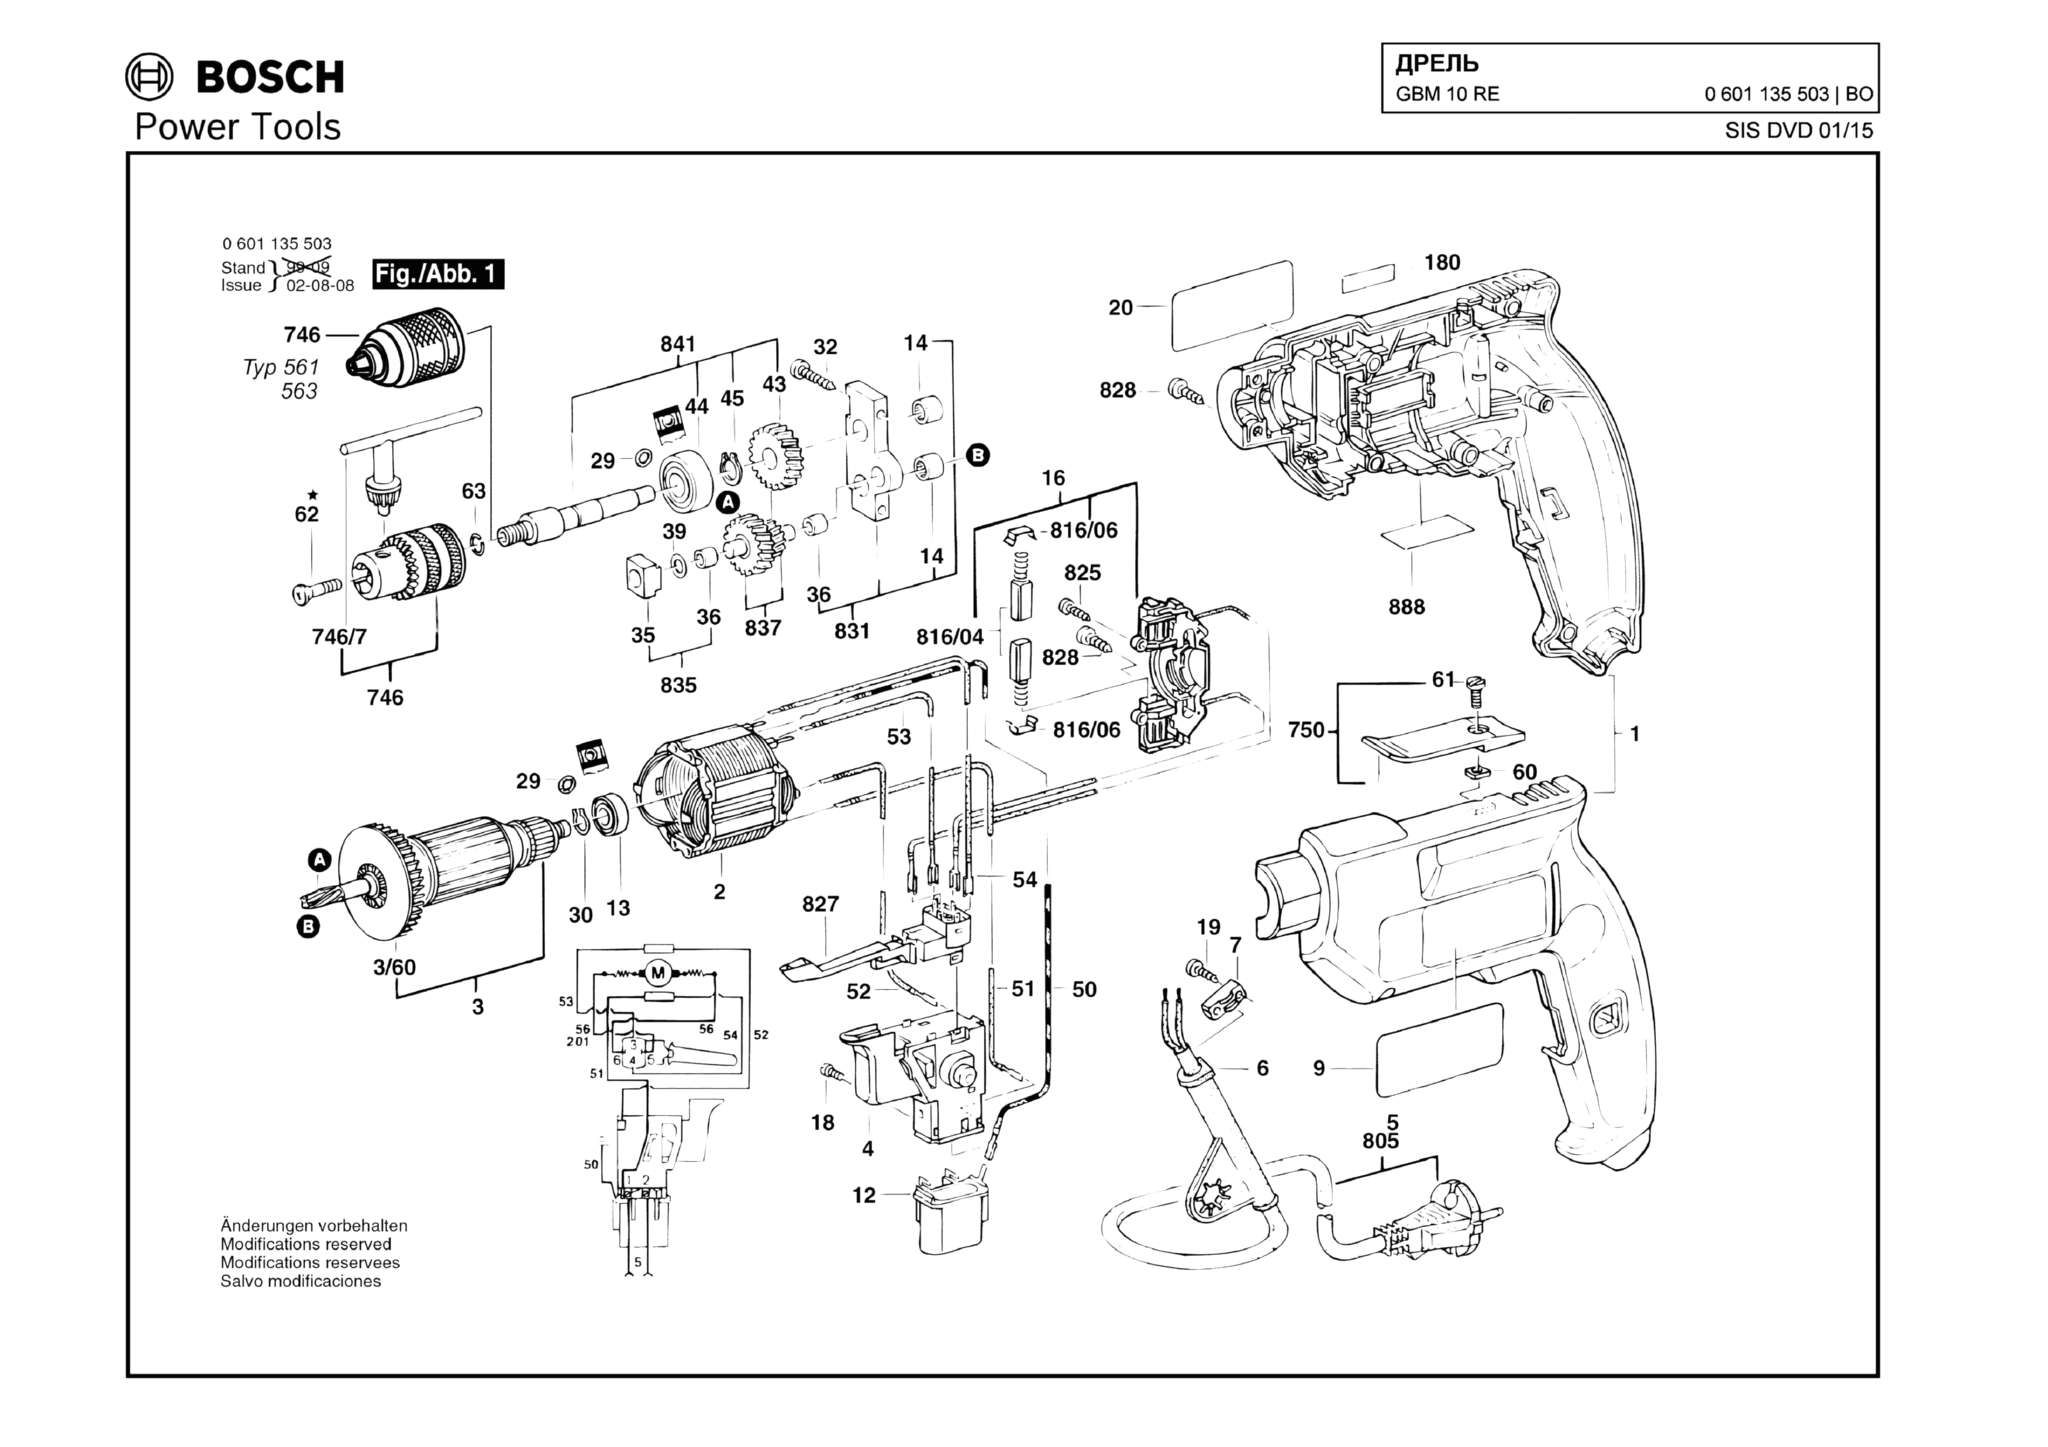 Запчасти, схема и деталировка Bosch GBM 10 RE (ТИП 0601135503)